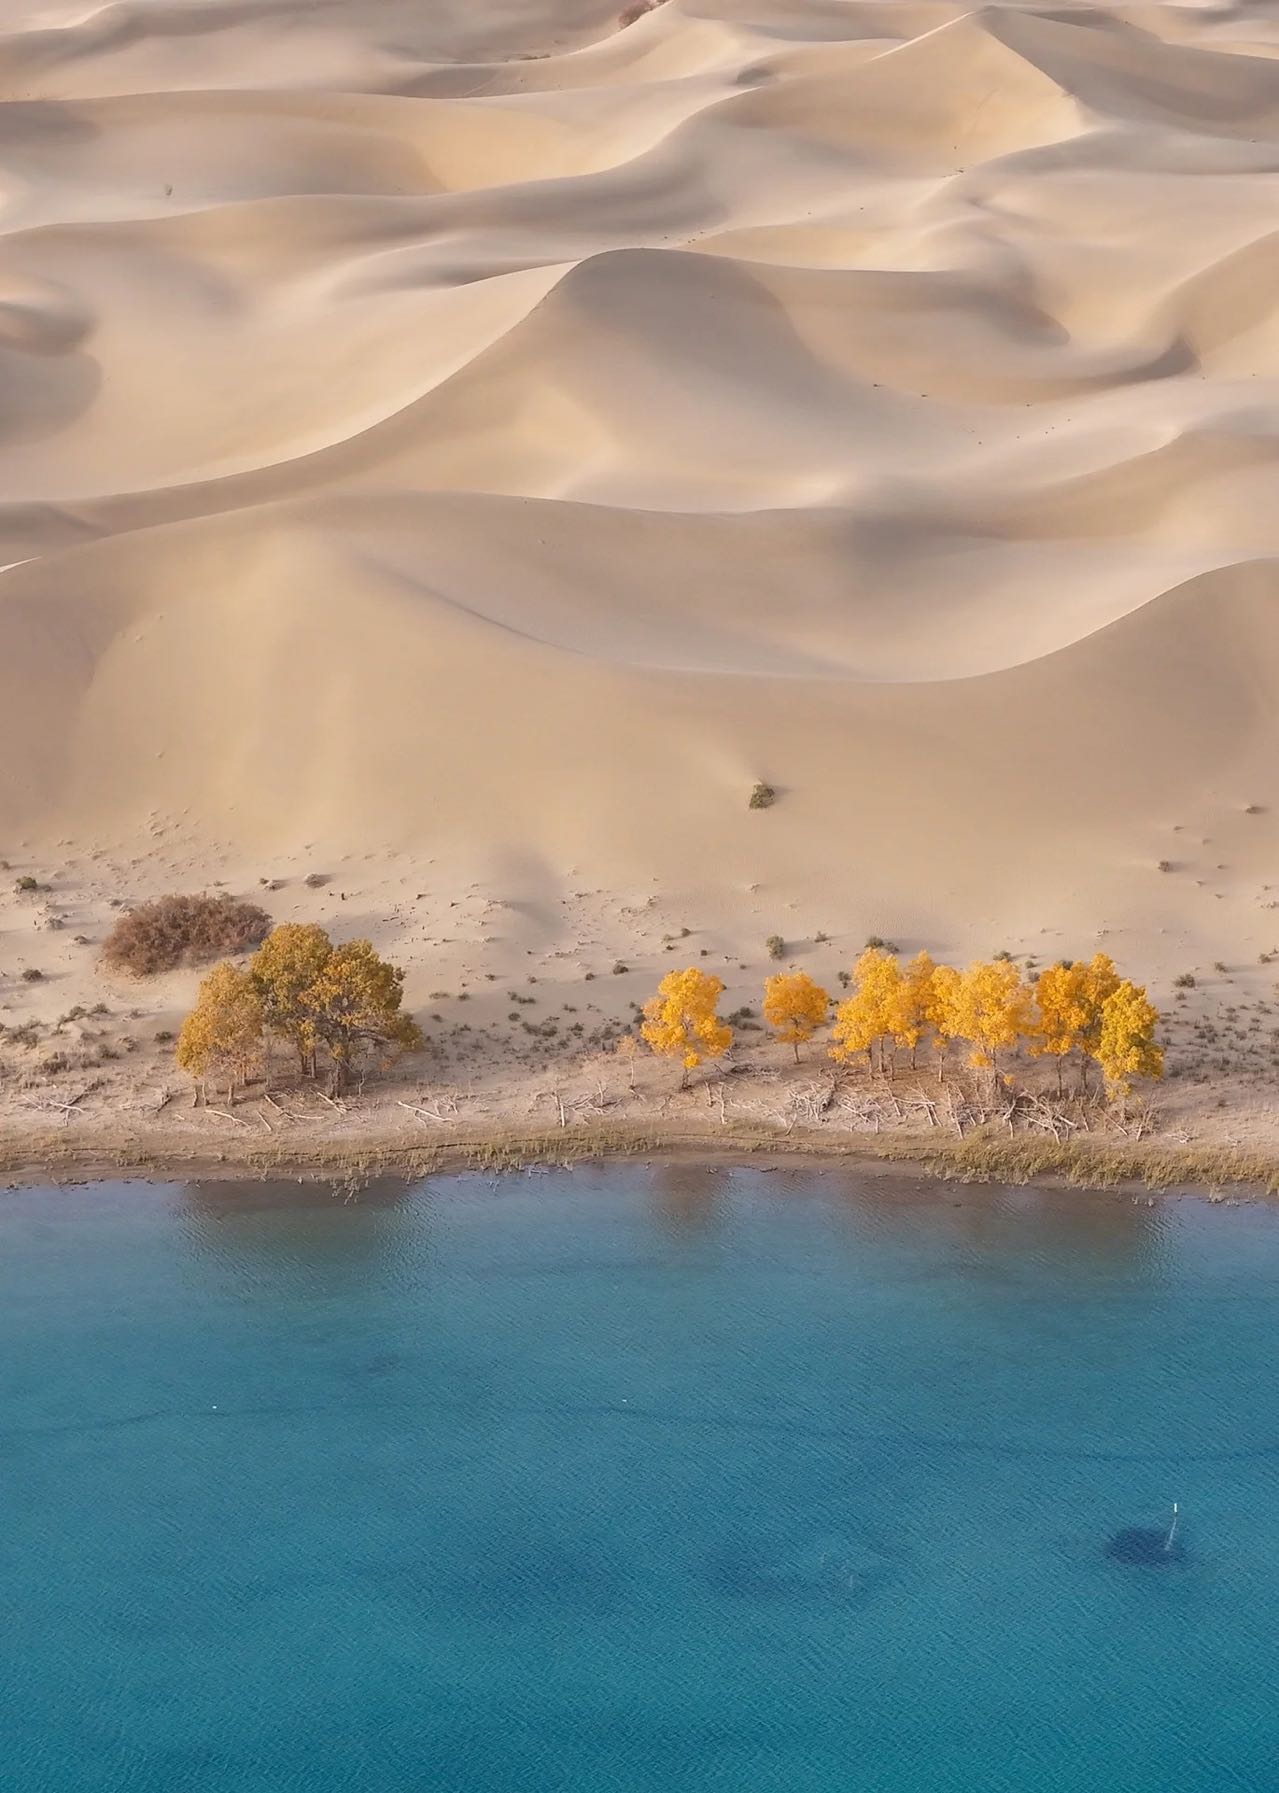 思念如沙——沙漠里美丽的传说！~~